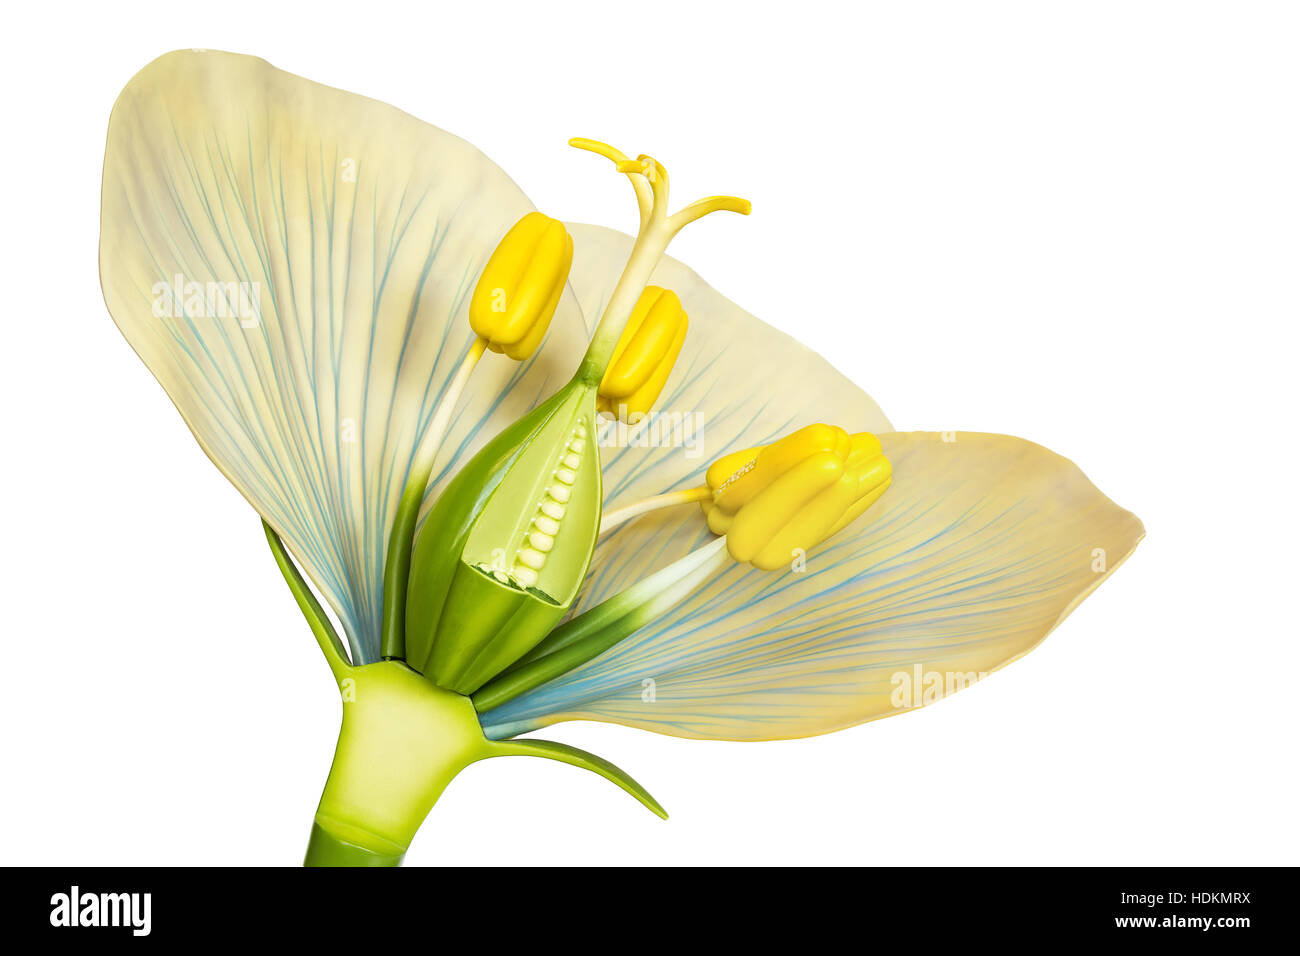 Modello di fiore con stami e pistilli isolati su sfondo bianco Foto Stock